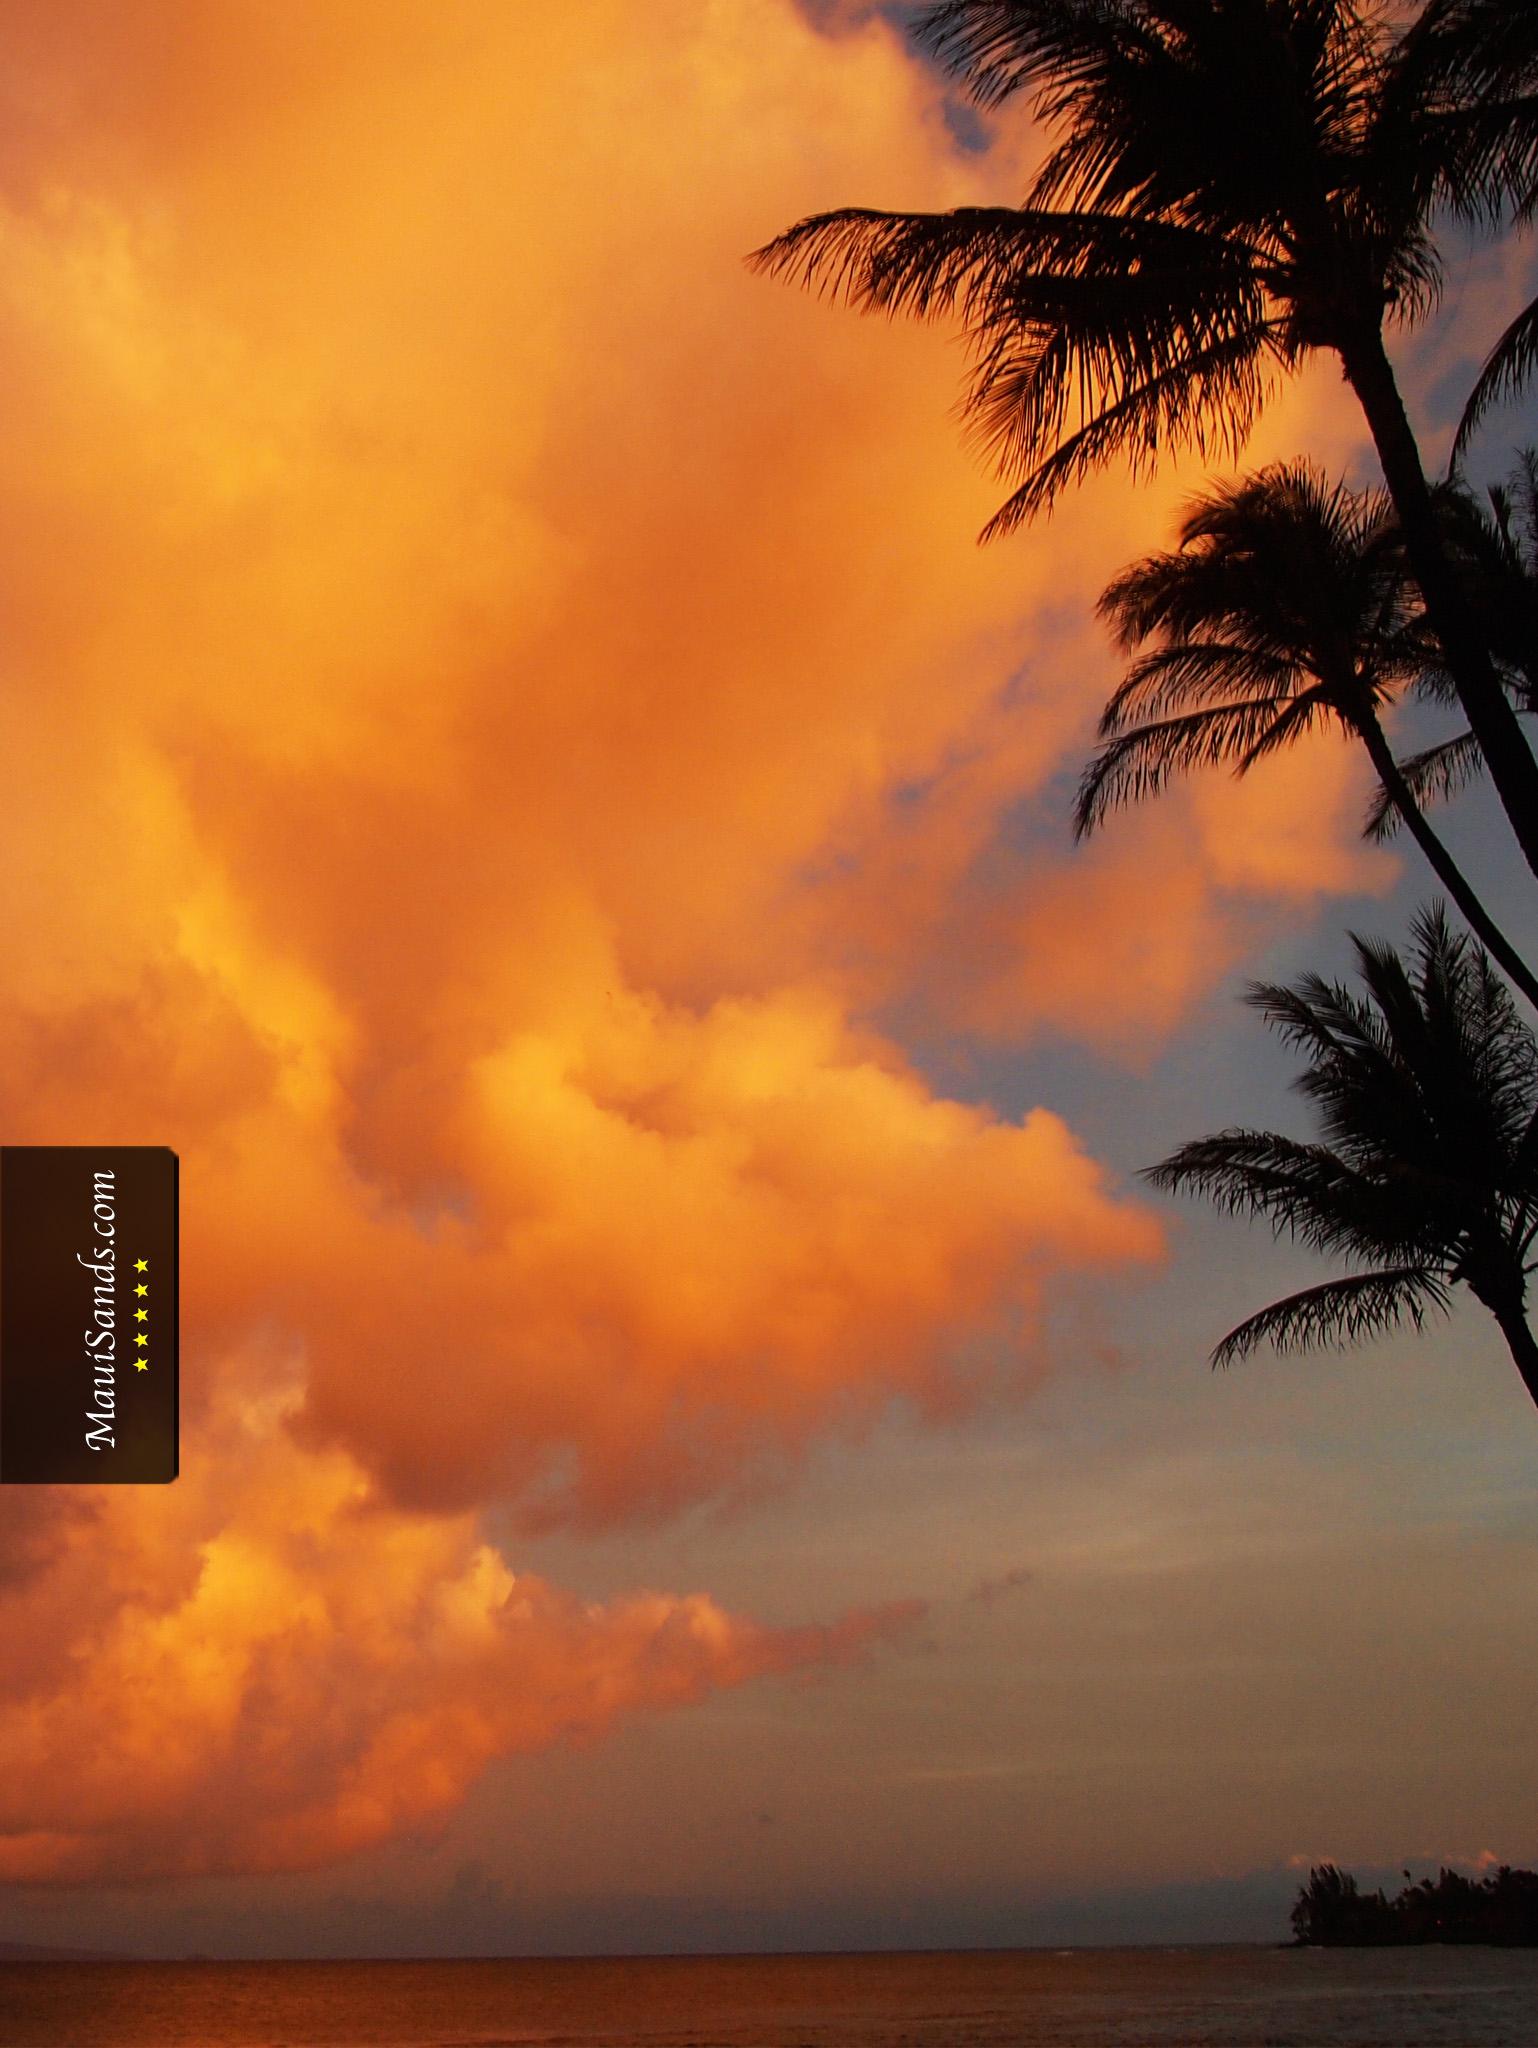 [hawai view] 45 Wp4088014